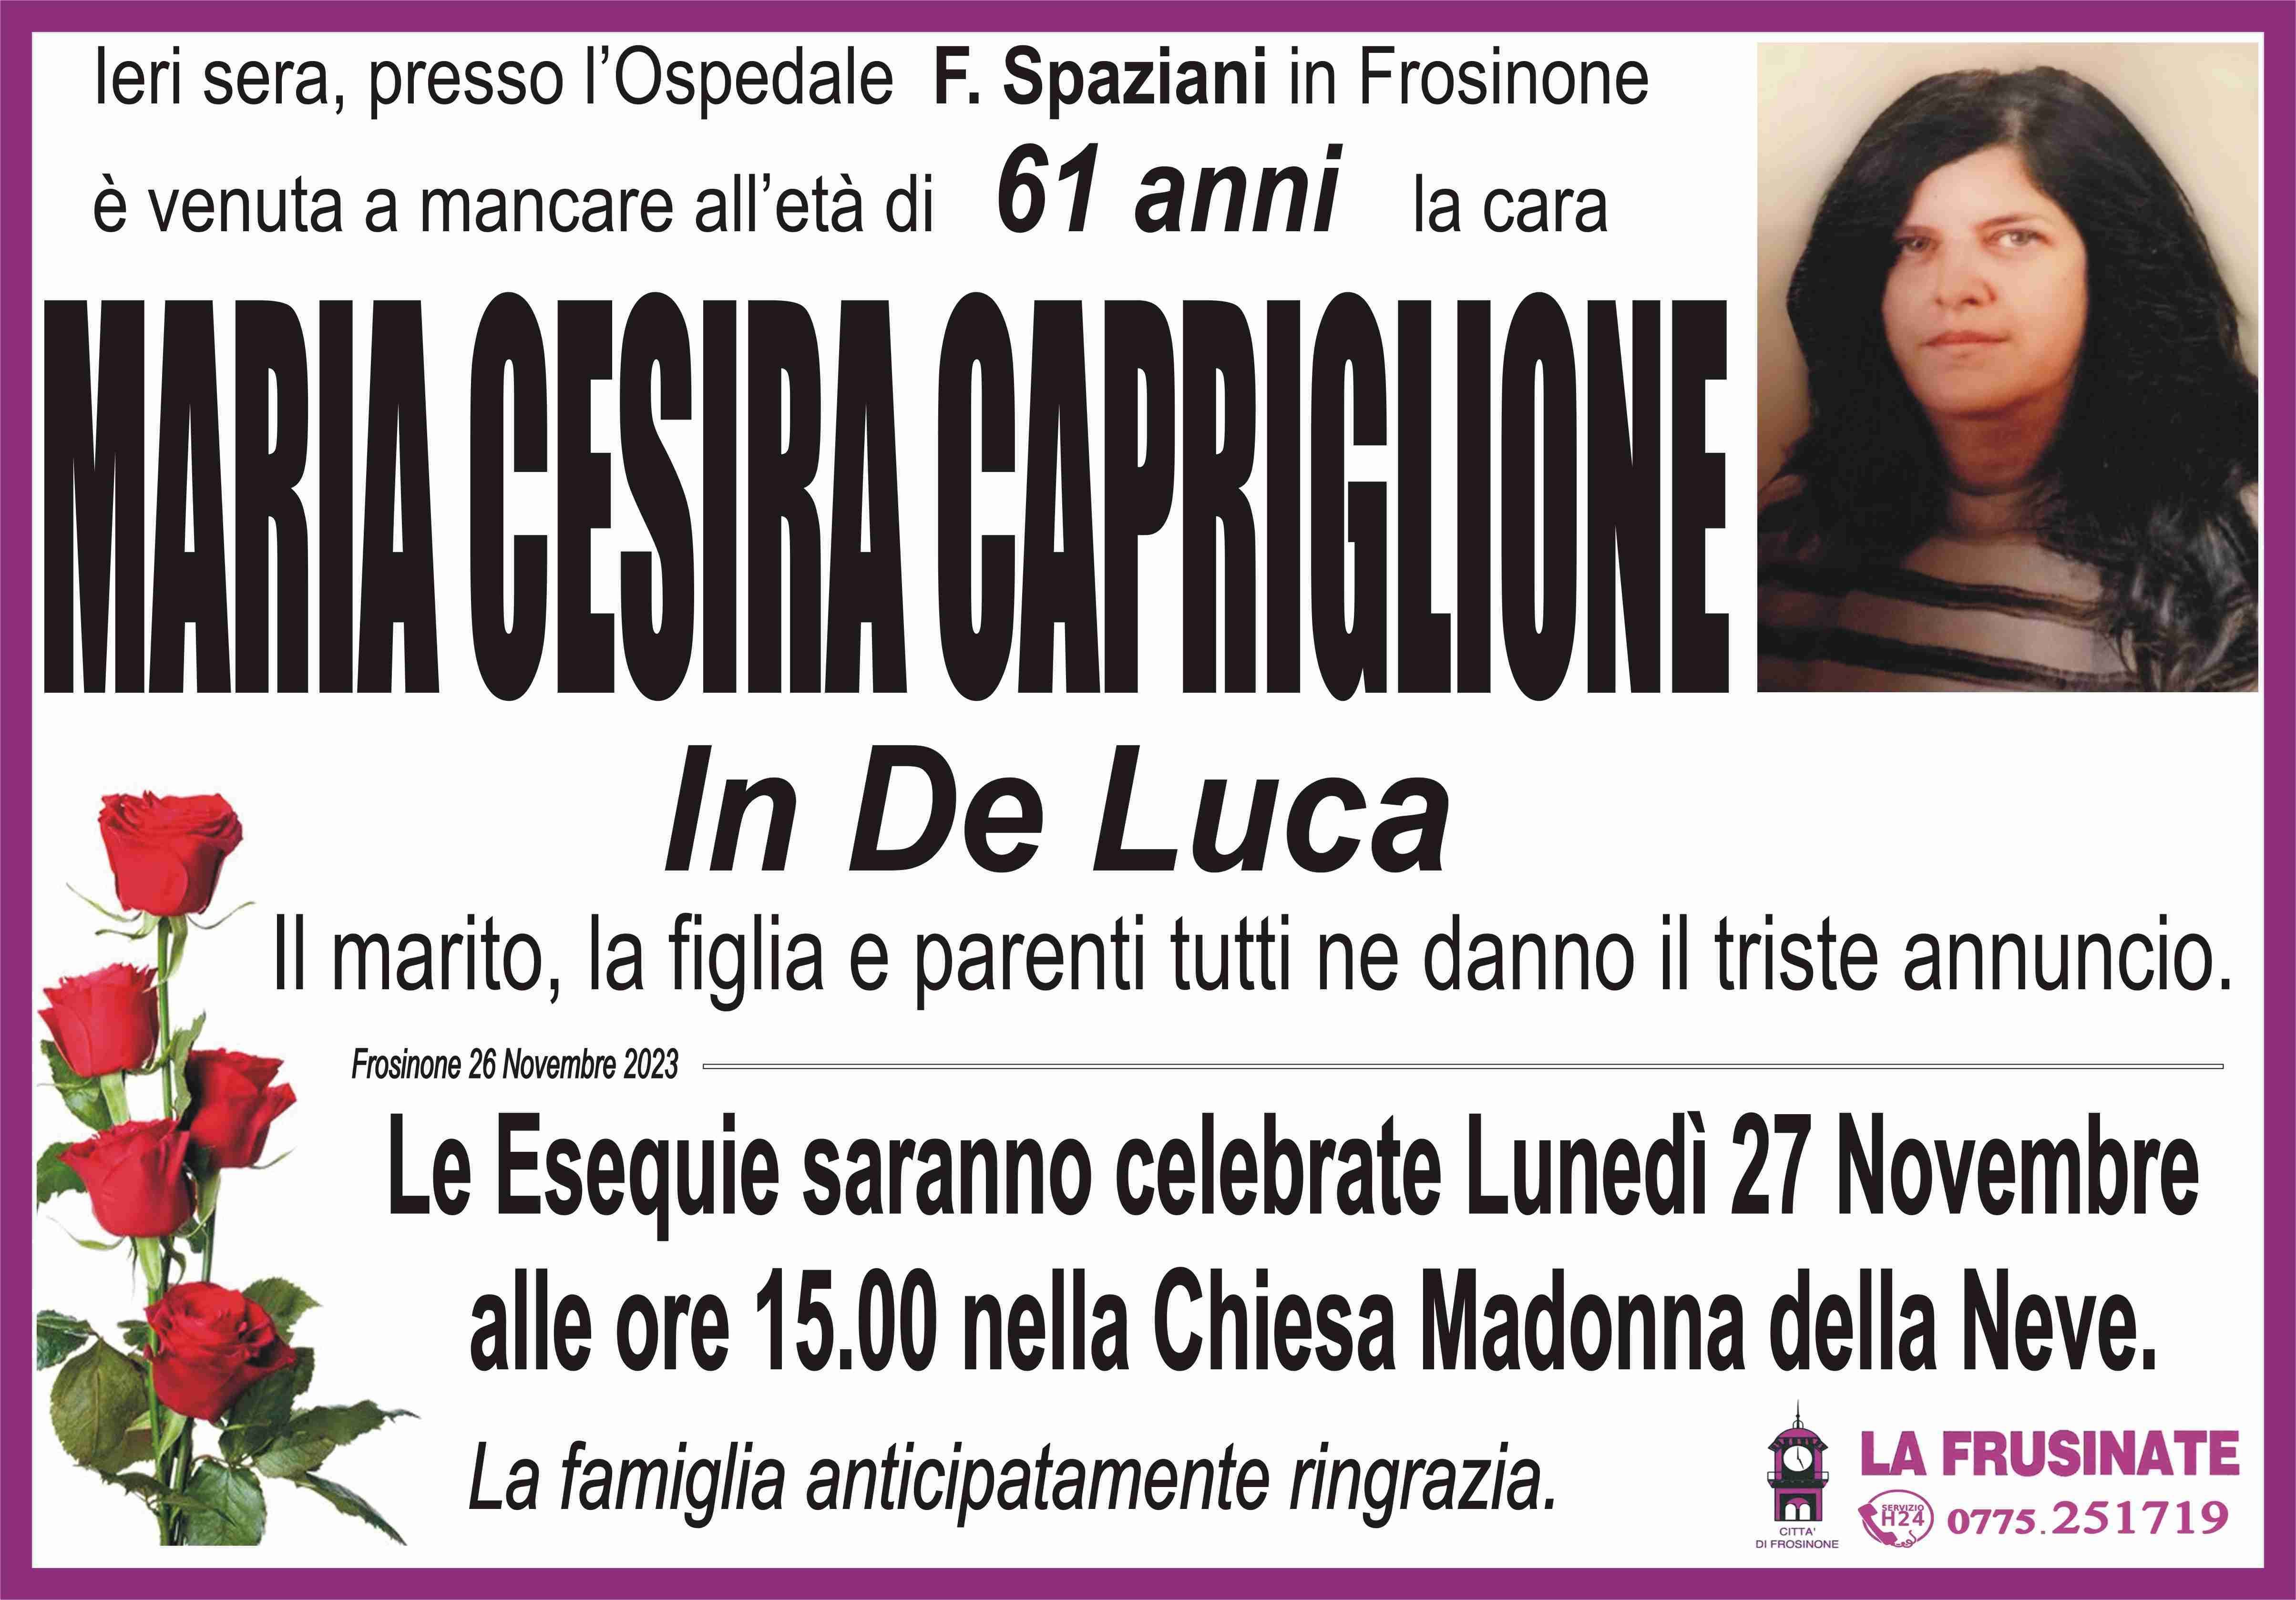 Maria Cesira Capriglione